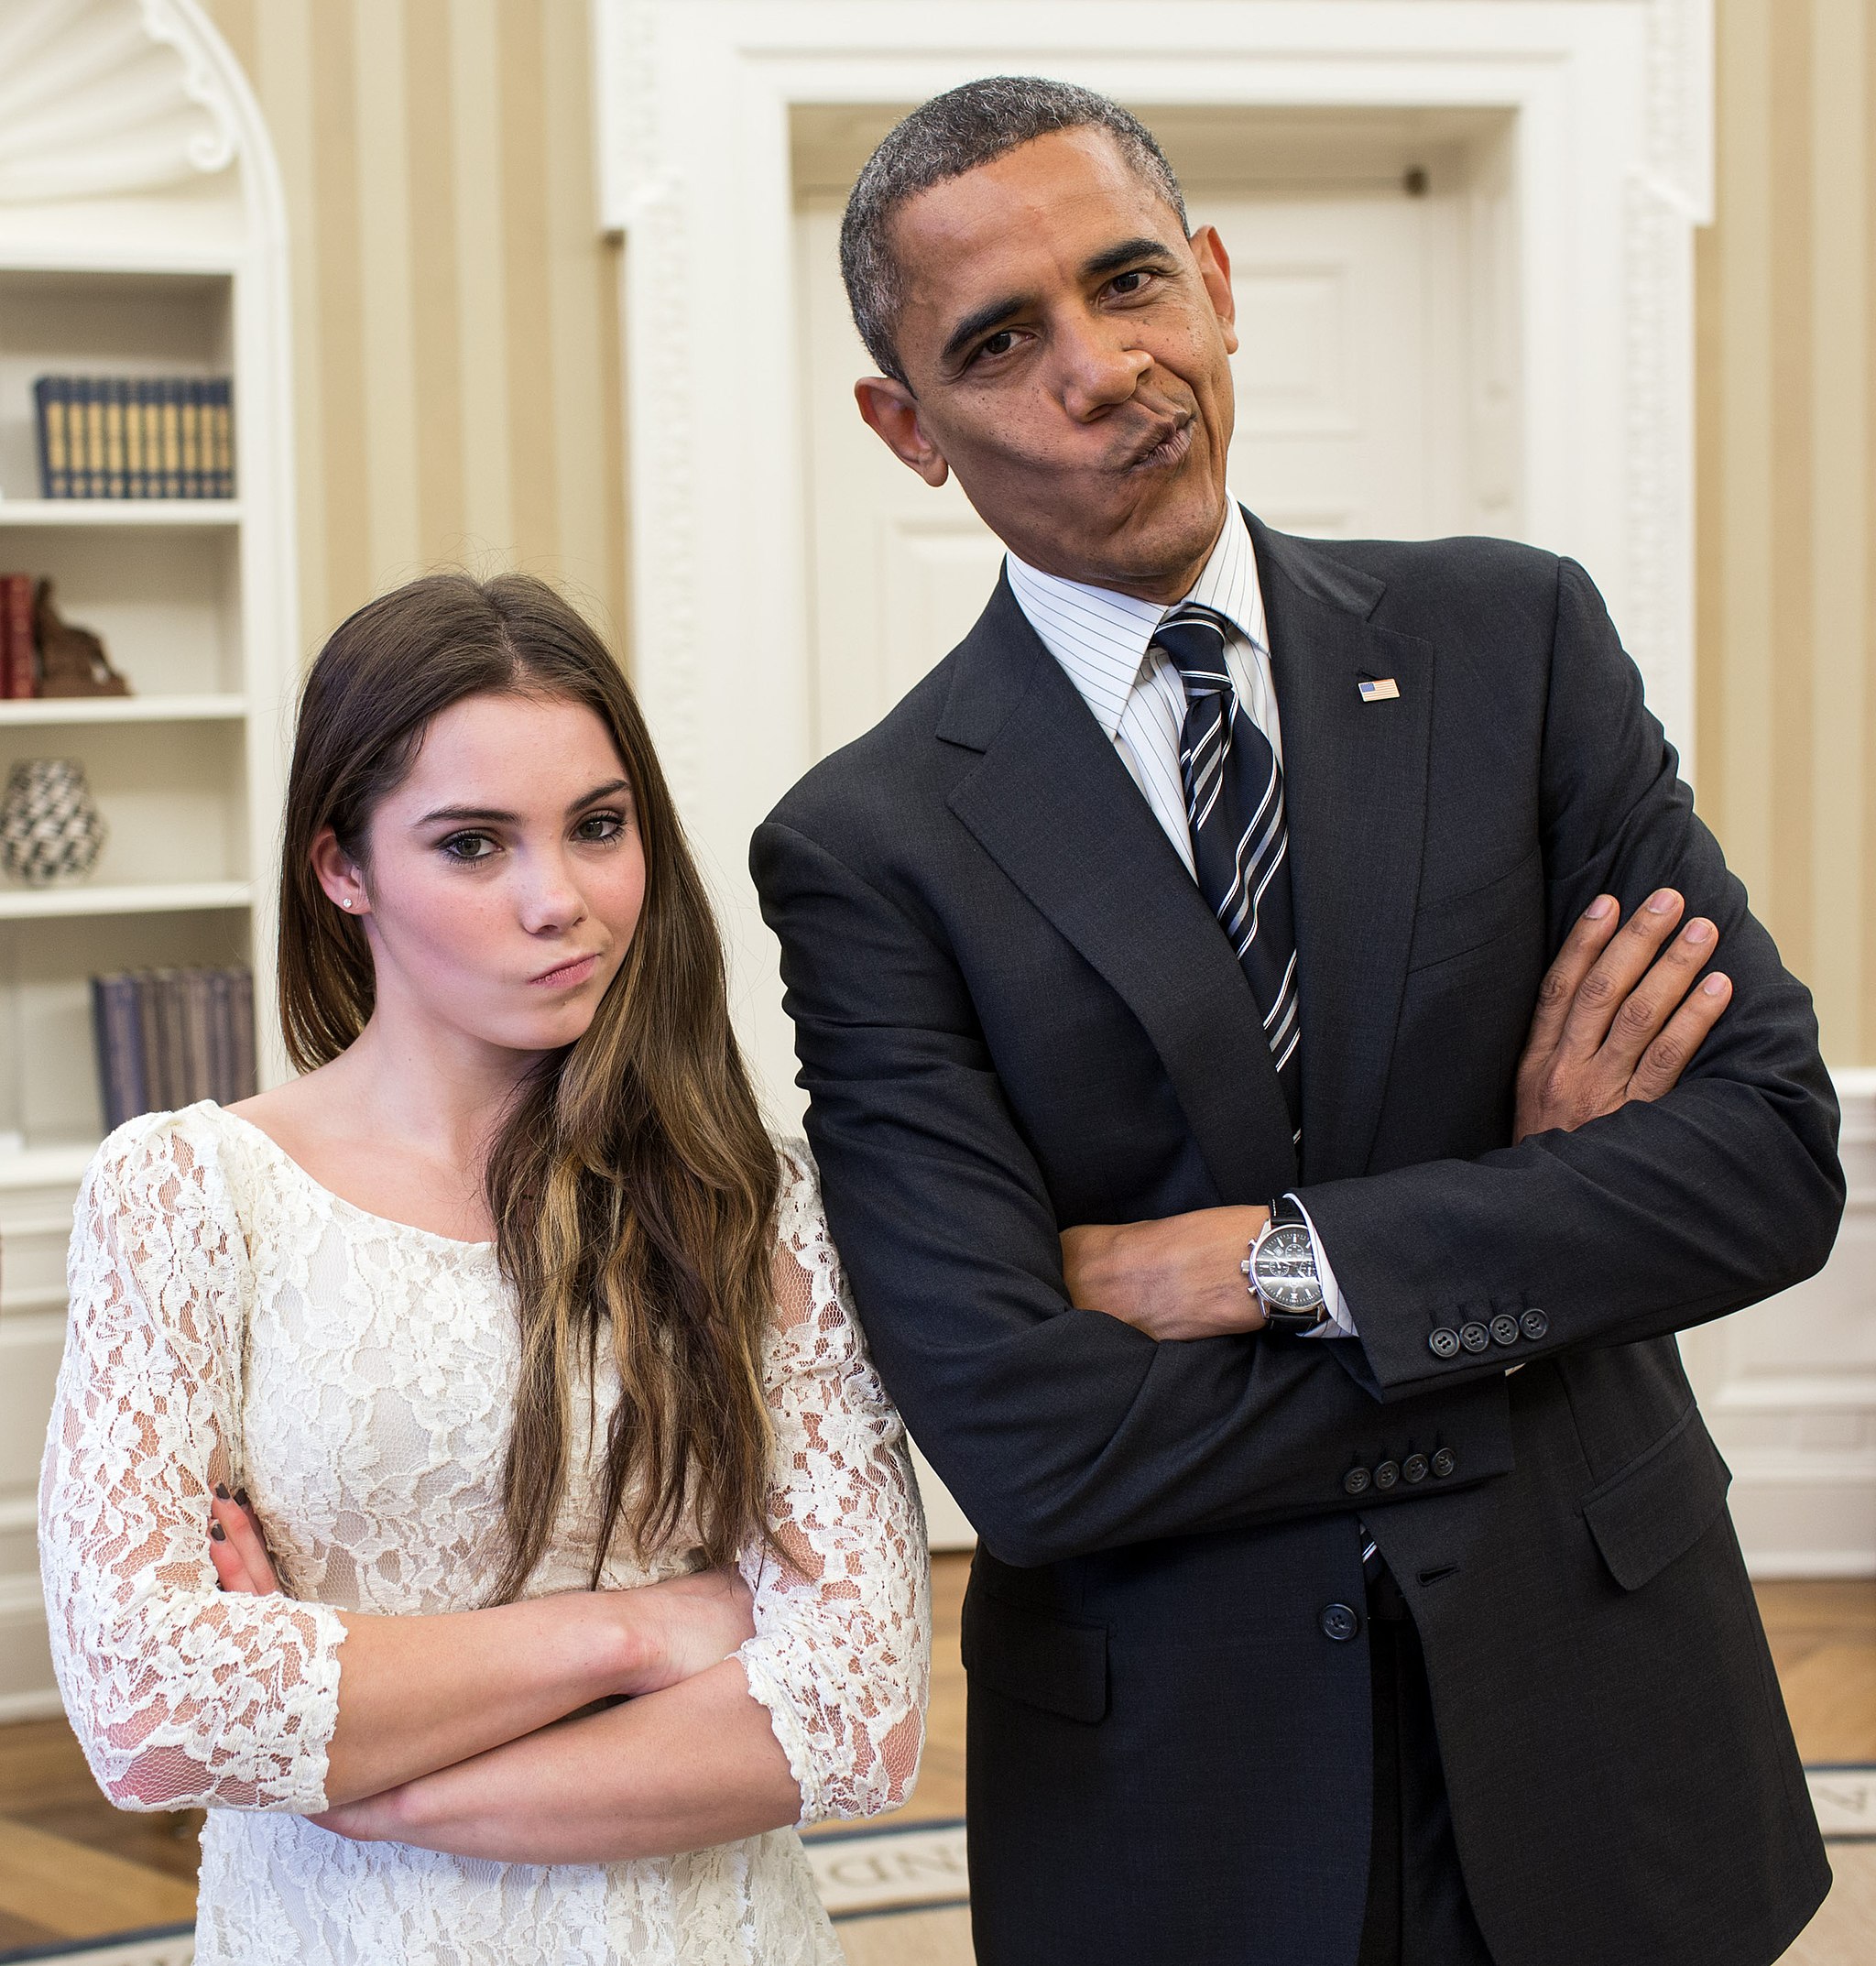 posed photo of intentionally smirking Barack Obama and USA gymnast McKayla Maroney illustrates visual drama and interest